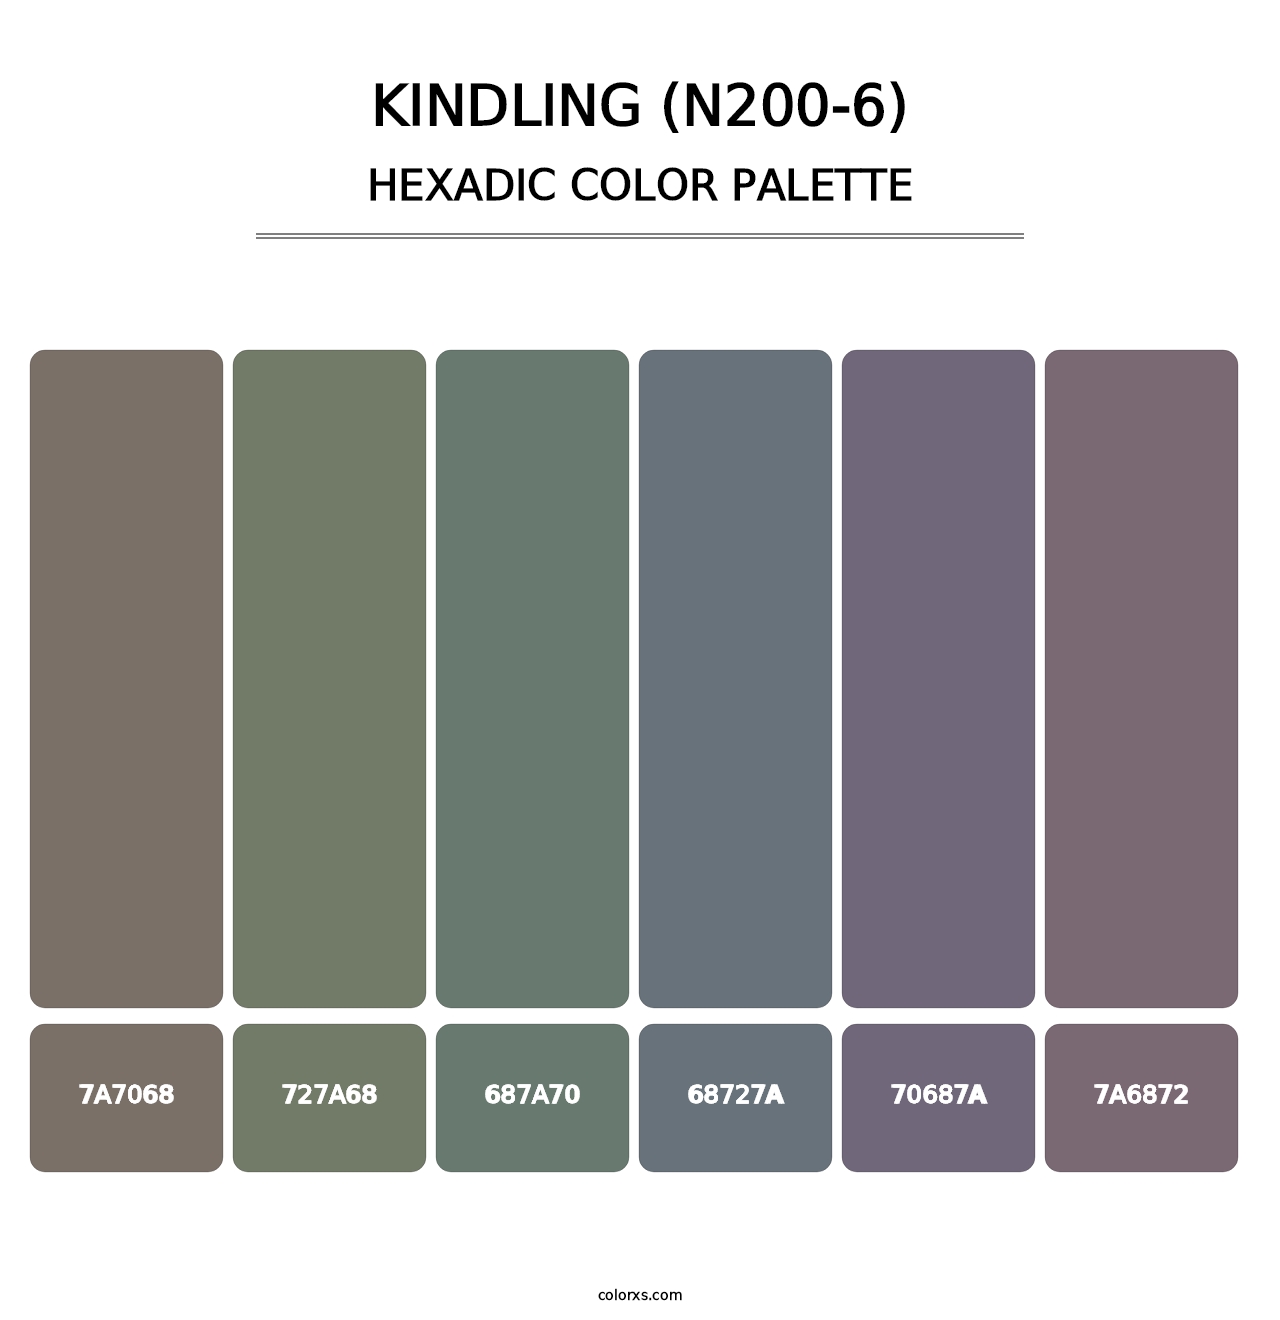 Kindling (N200-6) - Hexadic Color Palette